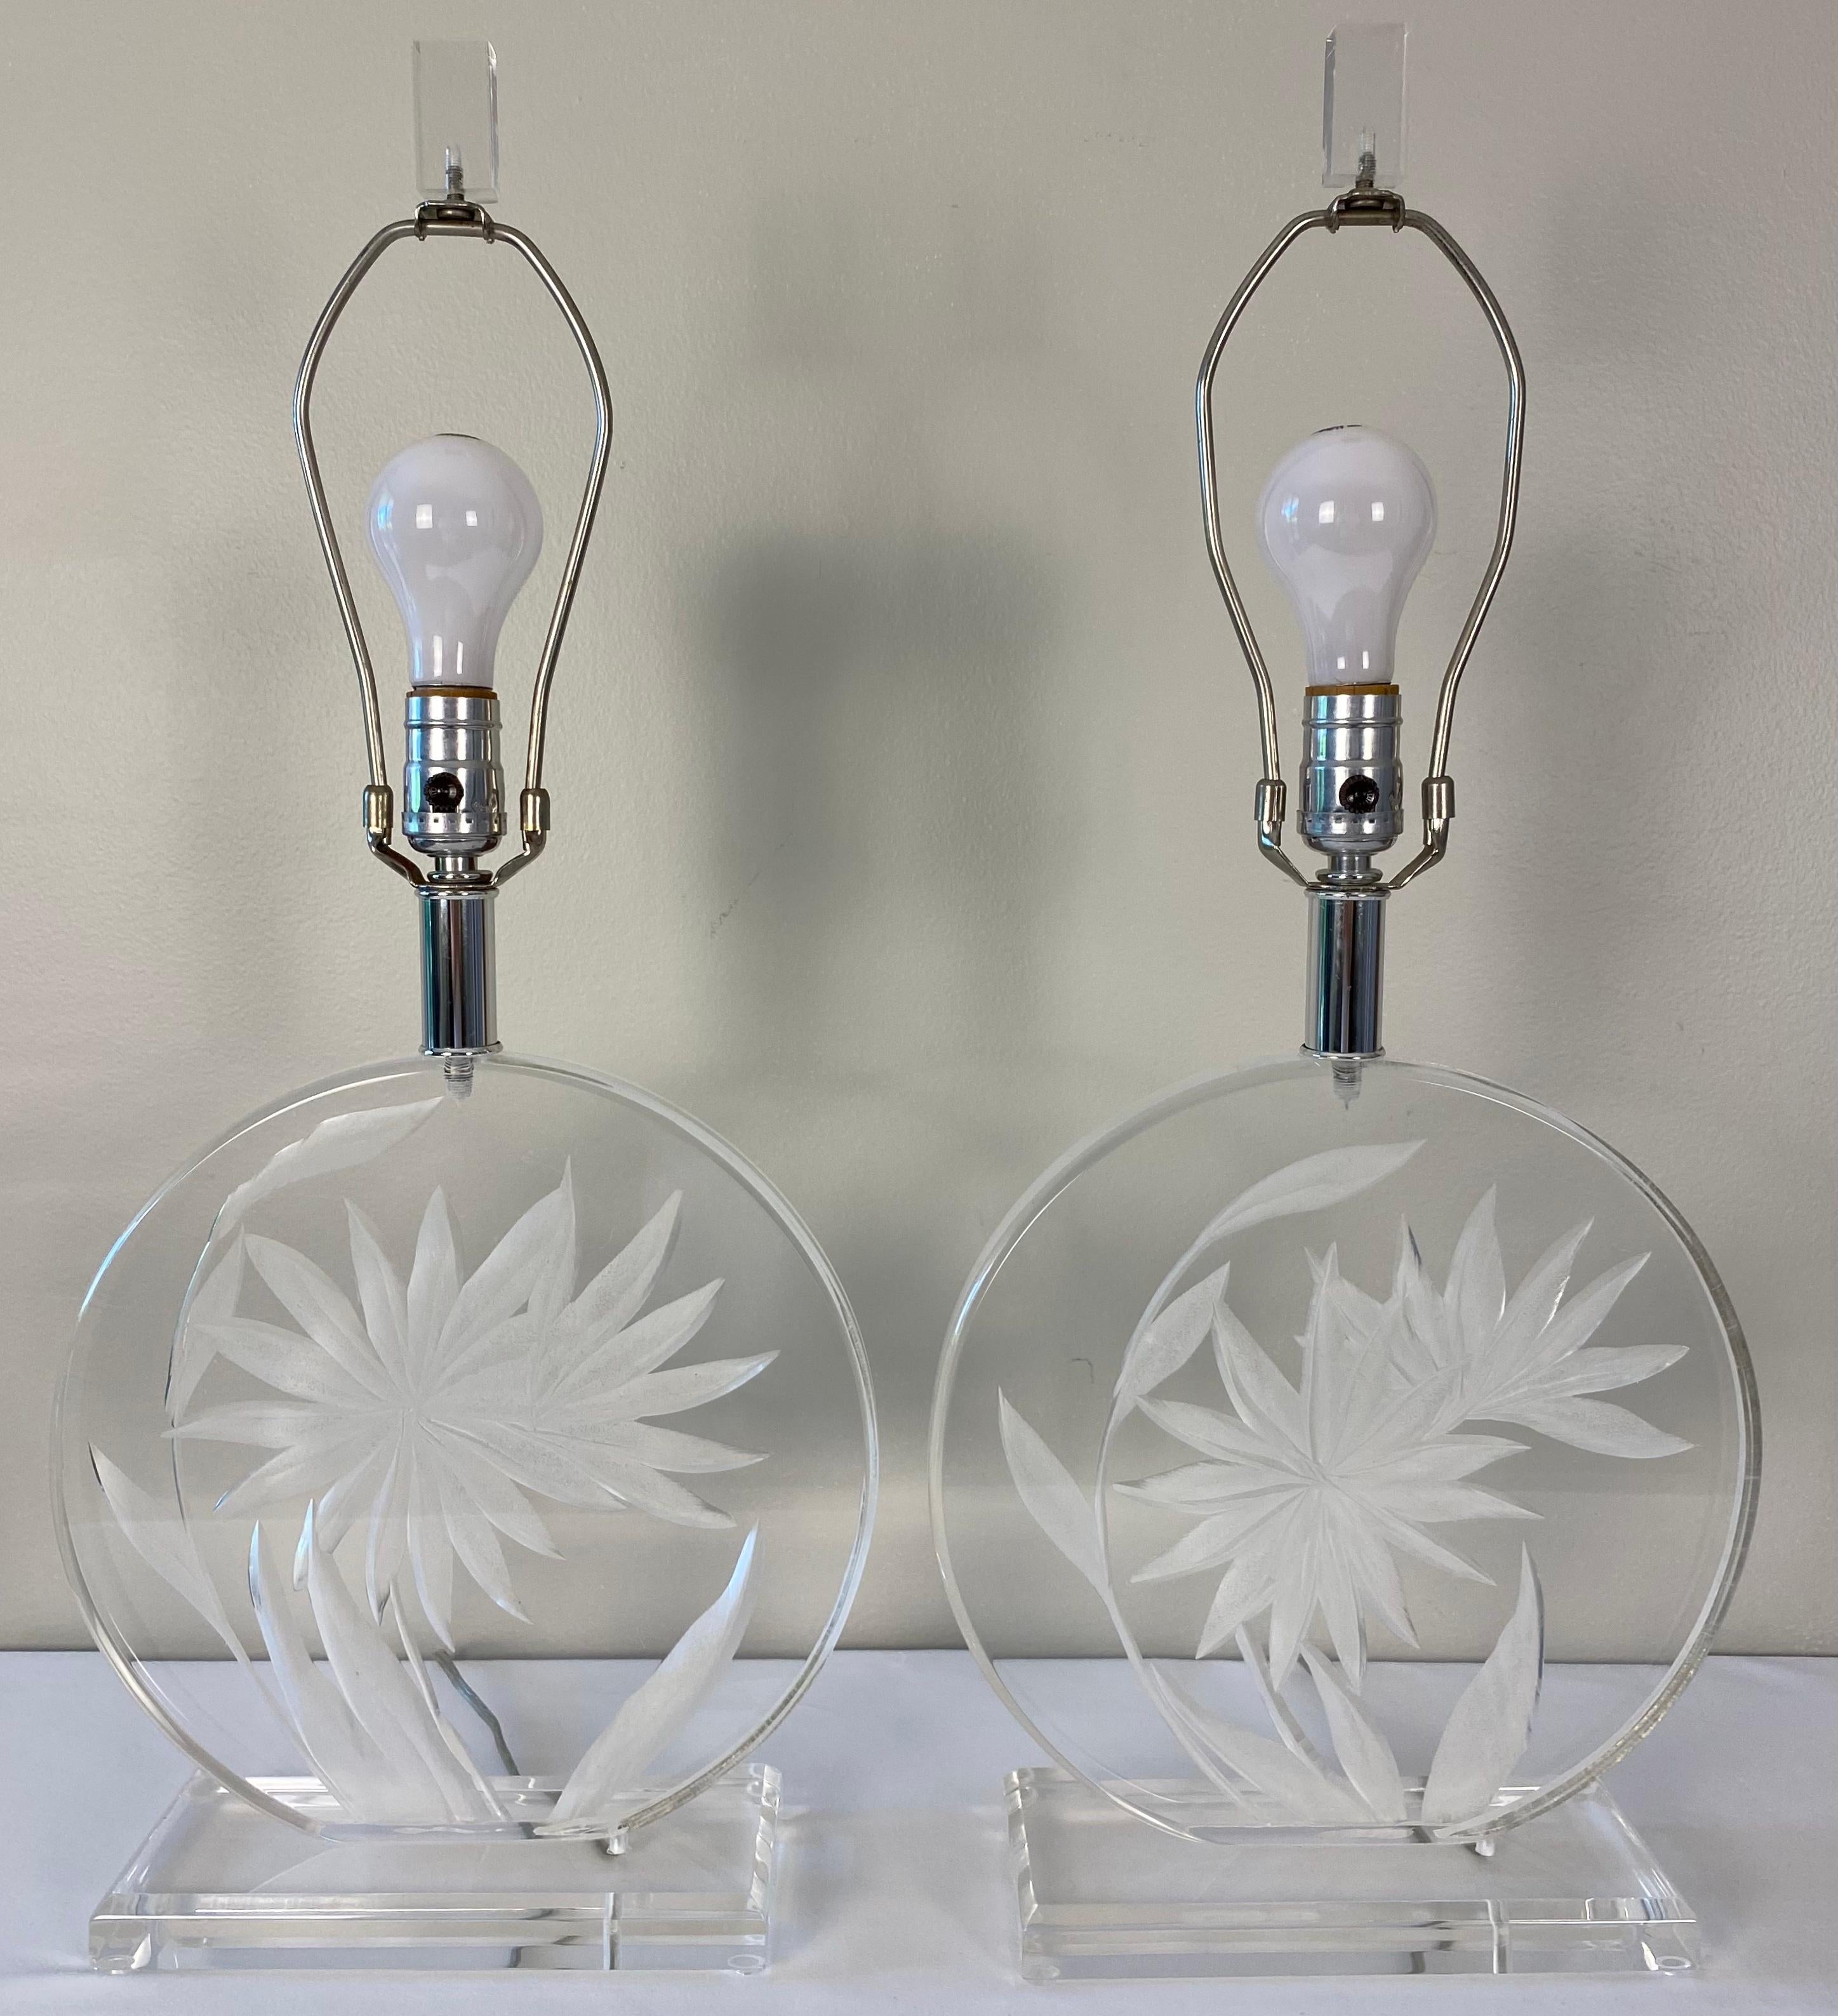 Une paire de lampes de table en lucite de très bonne qualité, attribuée à Karl Springer. Cette élégante paire de lampes de table en lucite est ornée d'un motif floral et de feuilles gravées, ce qui la rend plus intéressante et en fait une paire